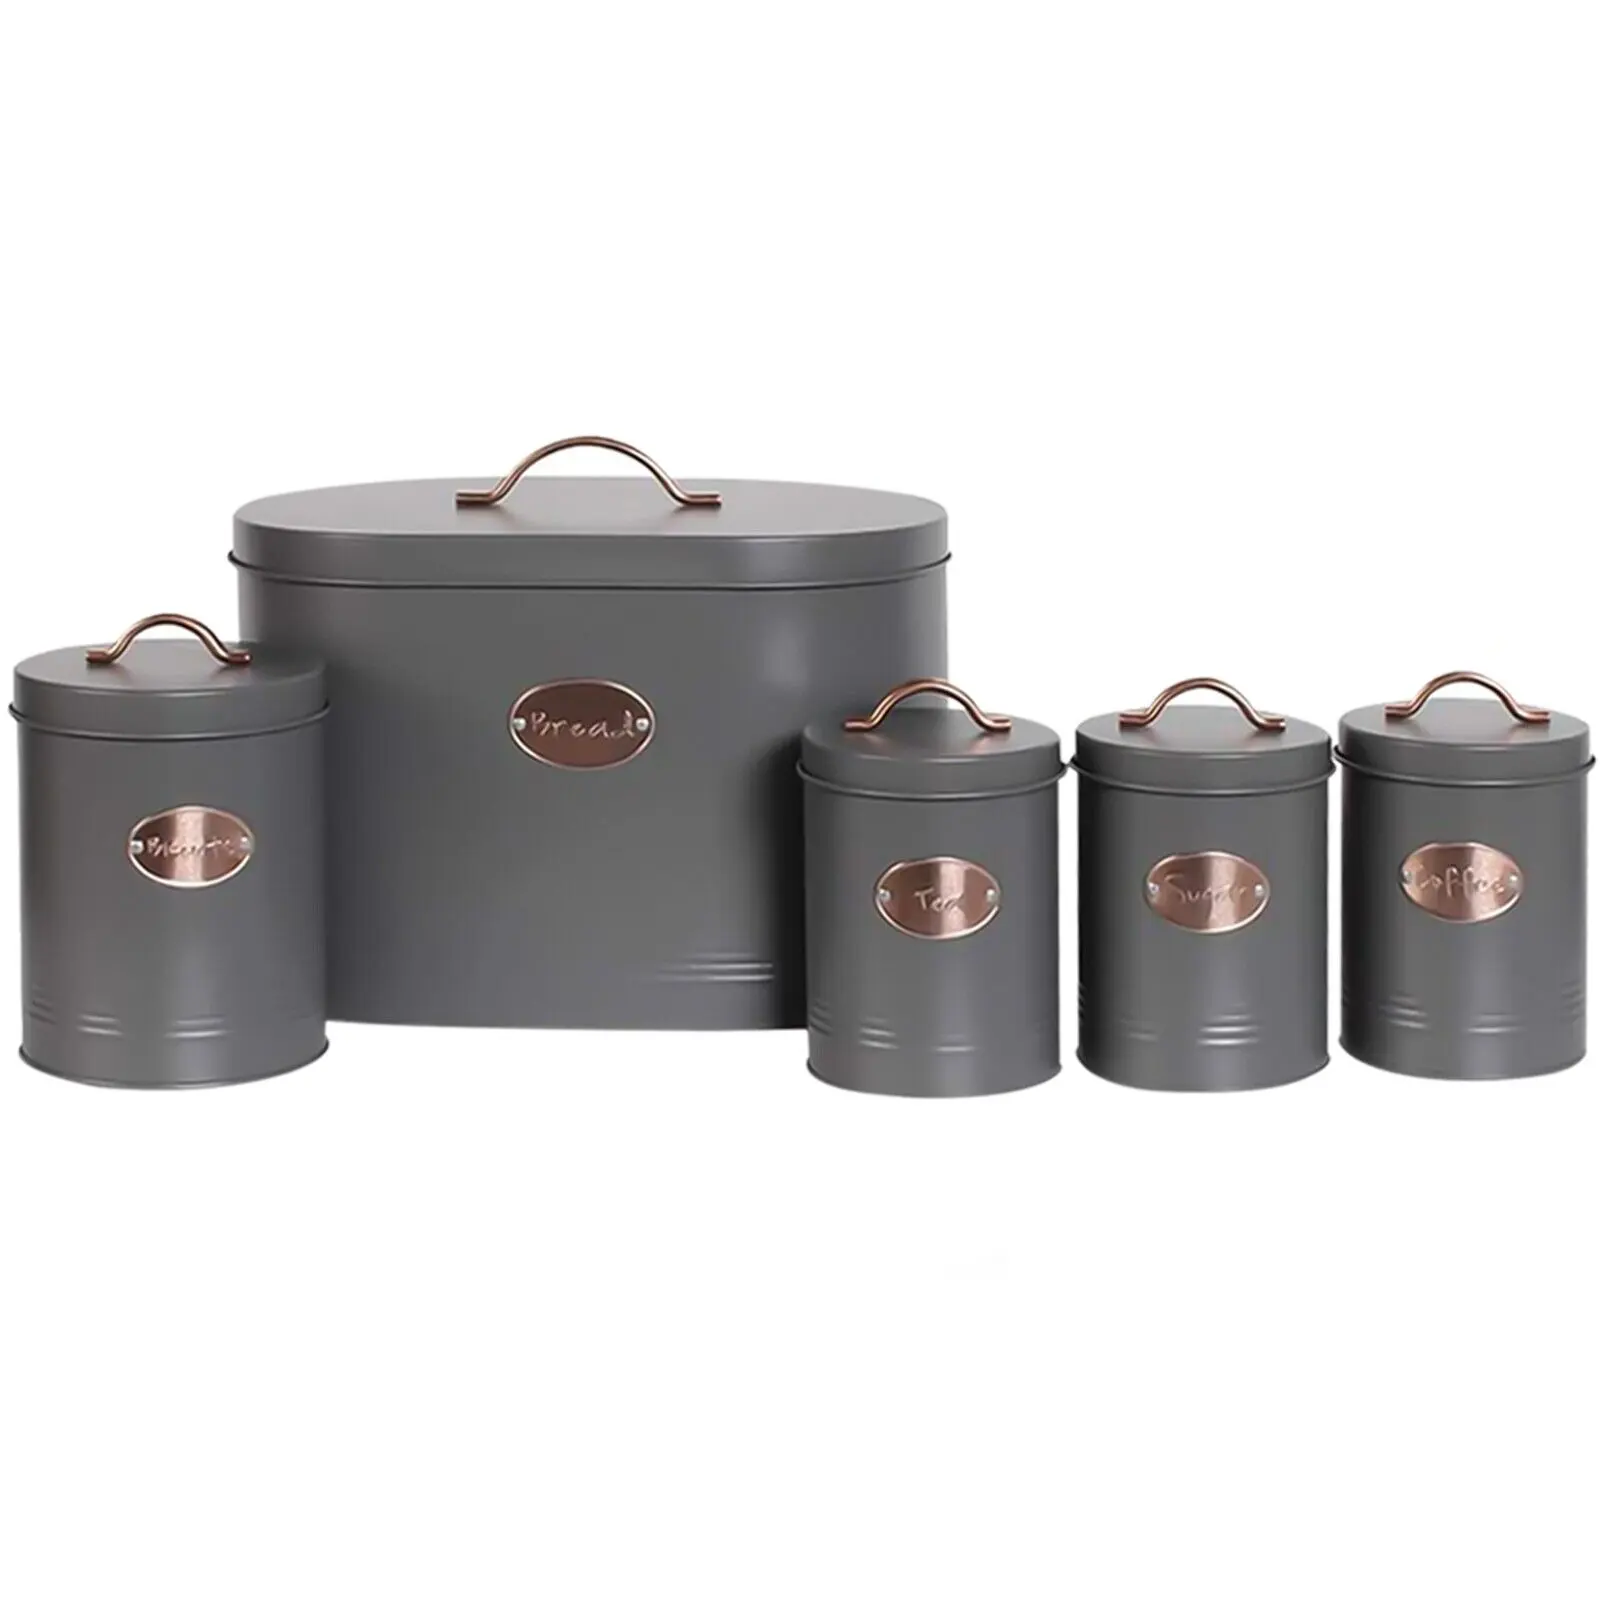 Latas de estanho portáteis para chá, recipiente de metal portátil para chá e comida, embalagem de metal em formato de lata